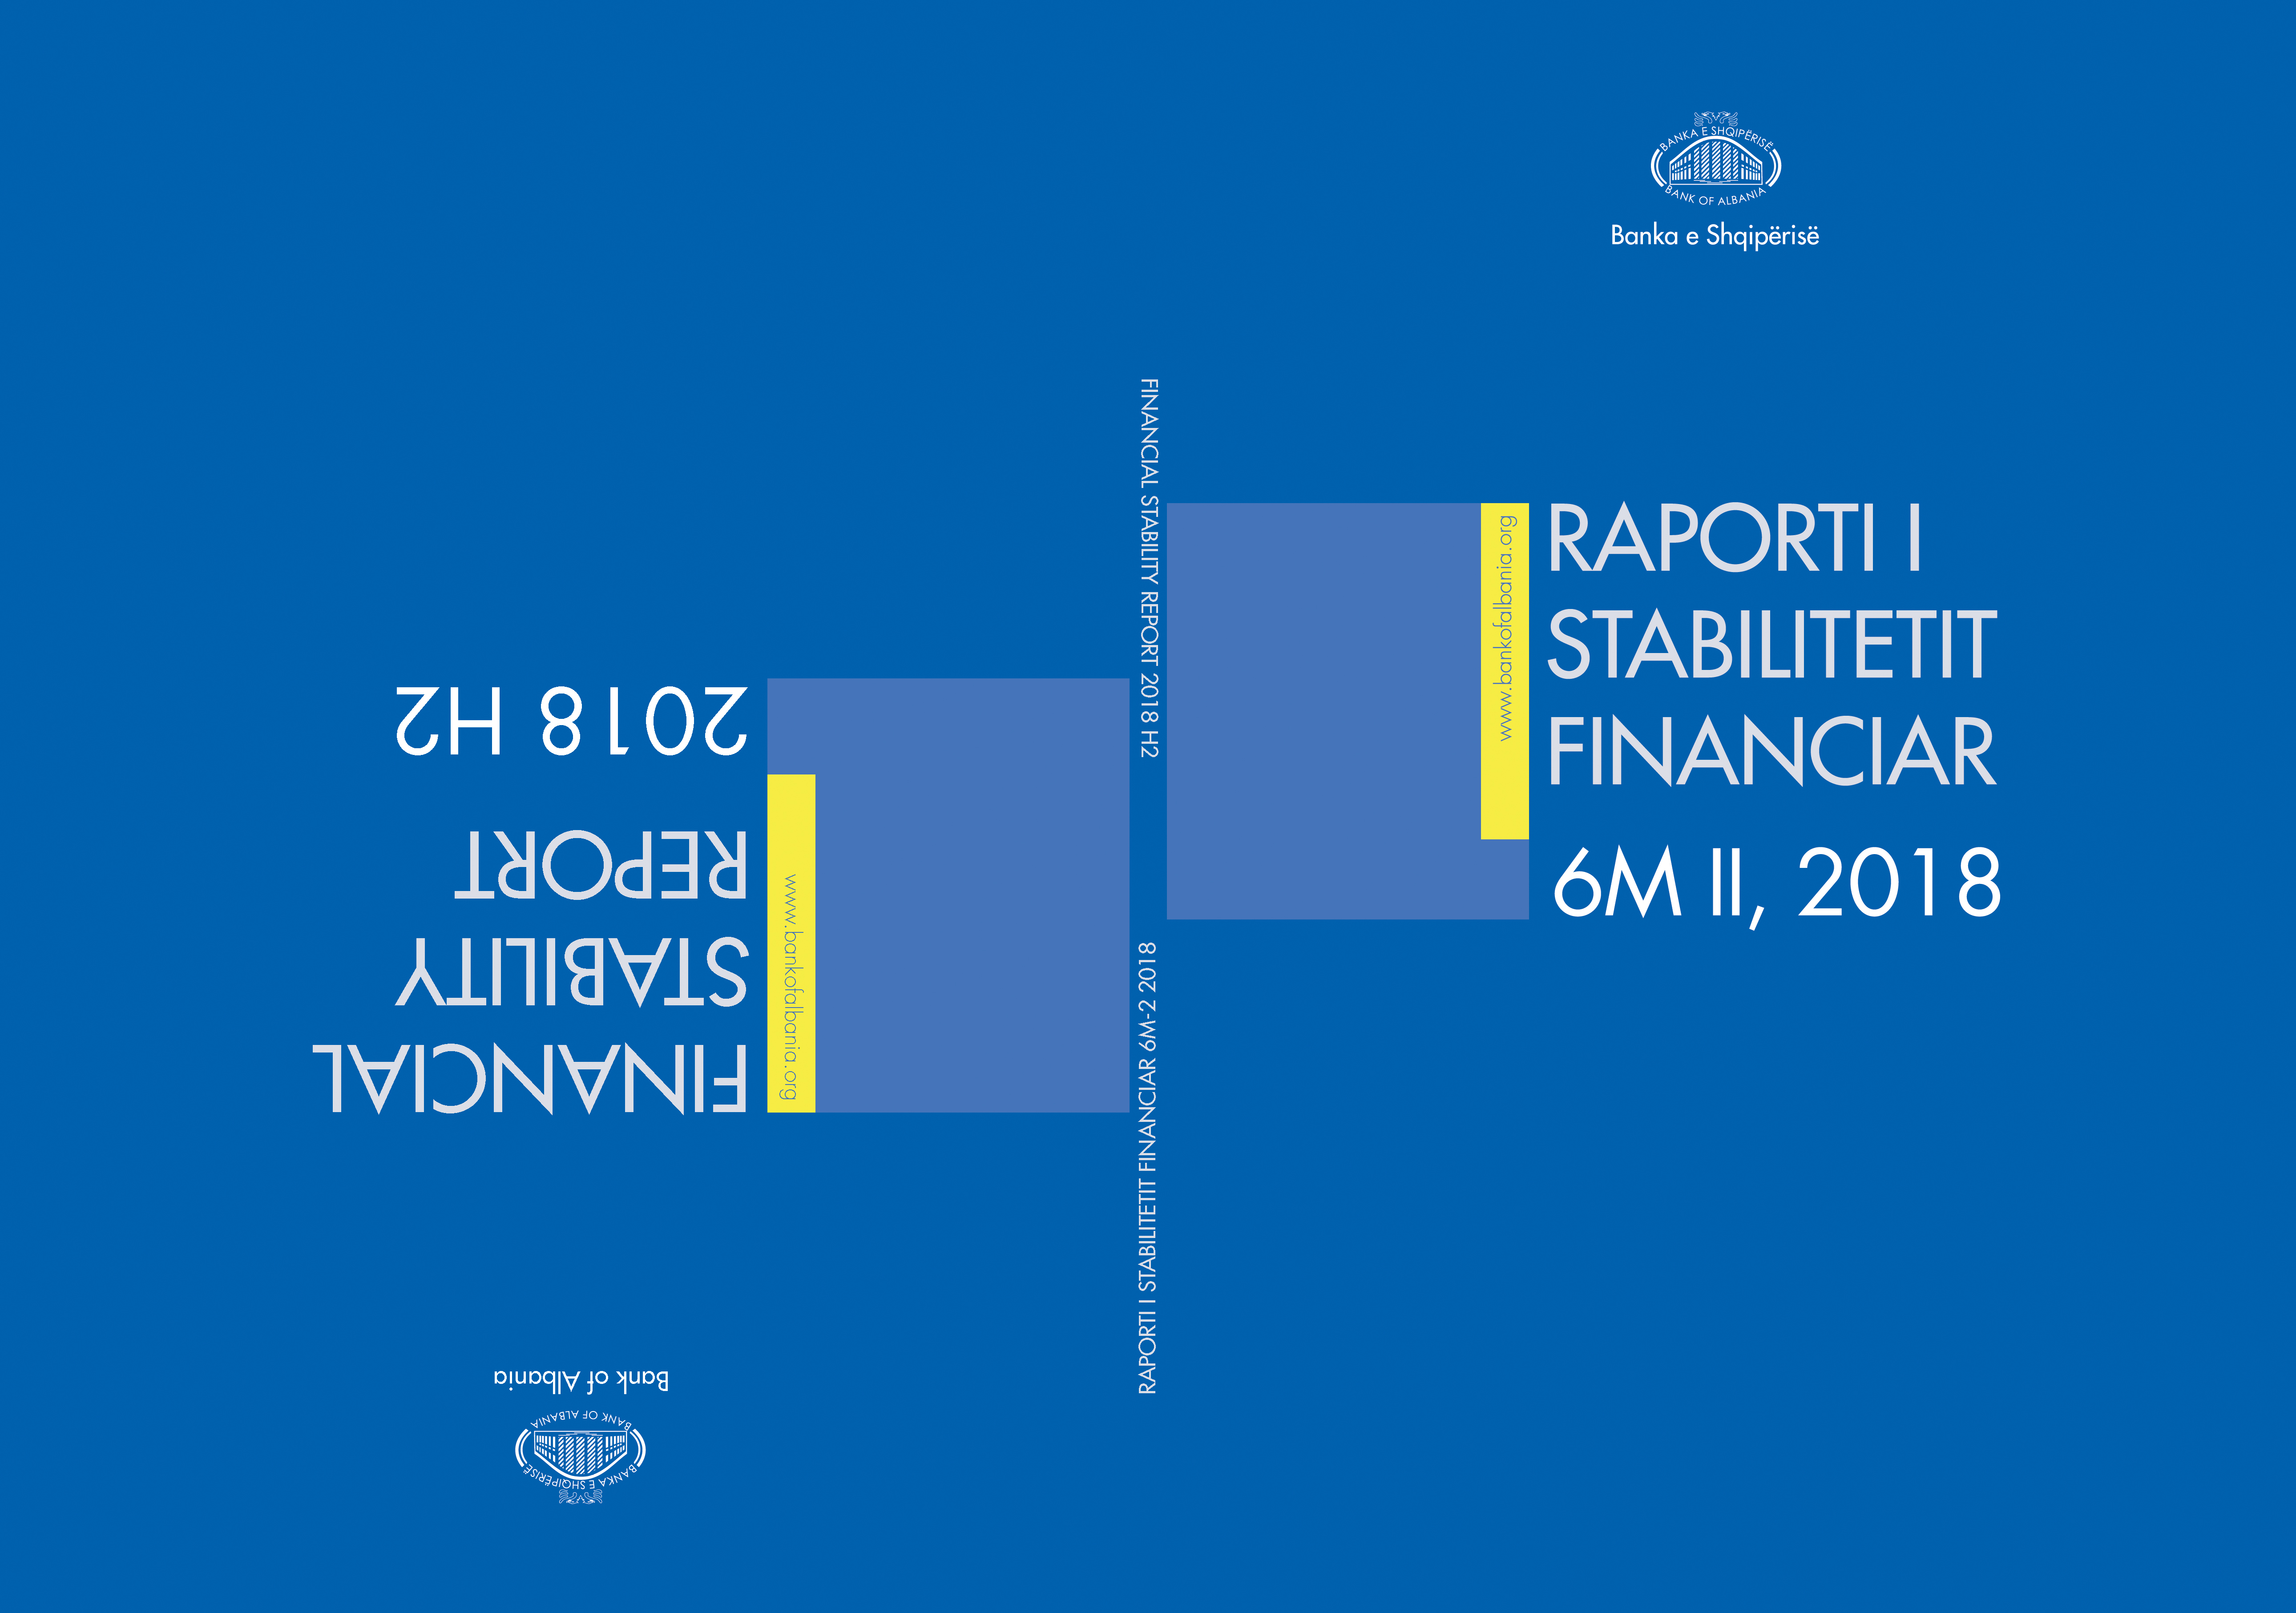 Raporti i Stabilitetit Financiar për gjashtëmujorin e dytë të vitit 2018